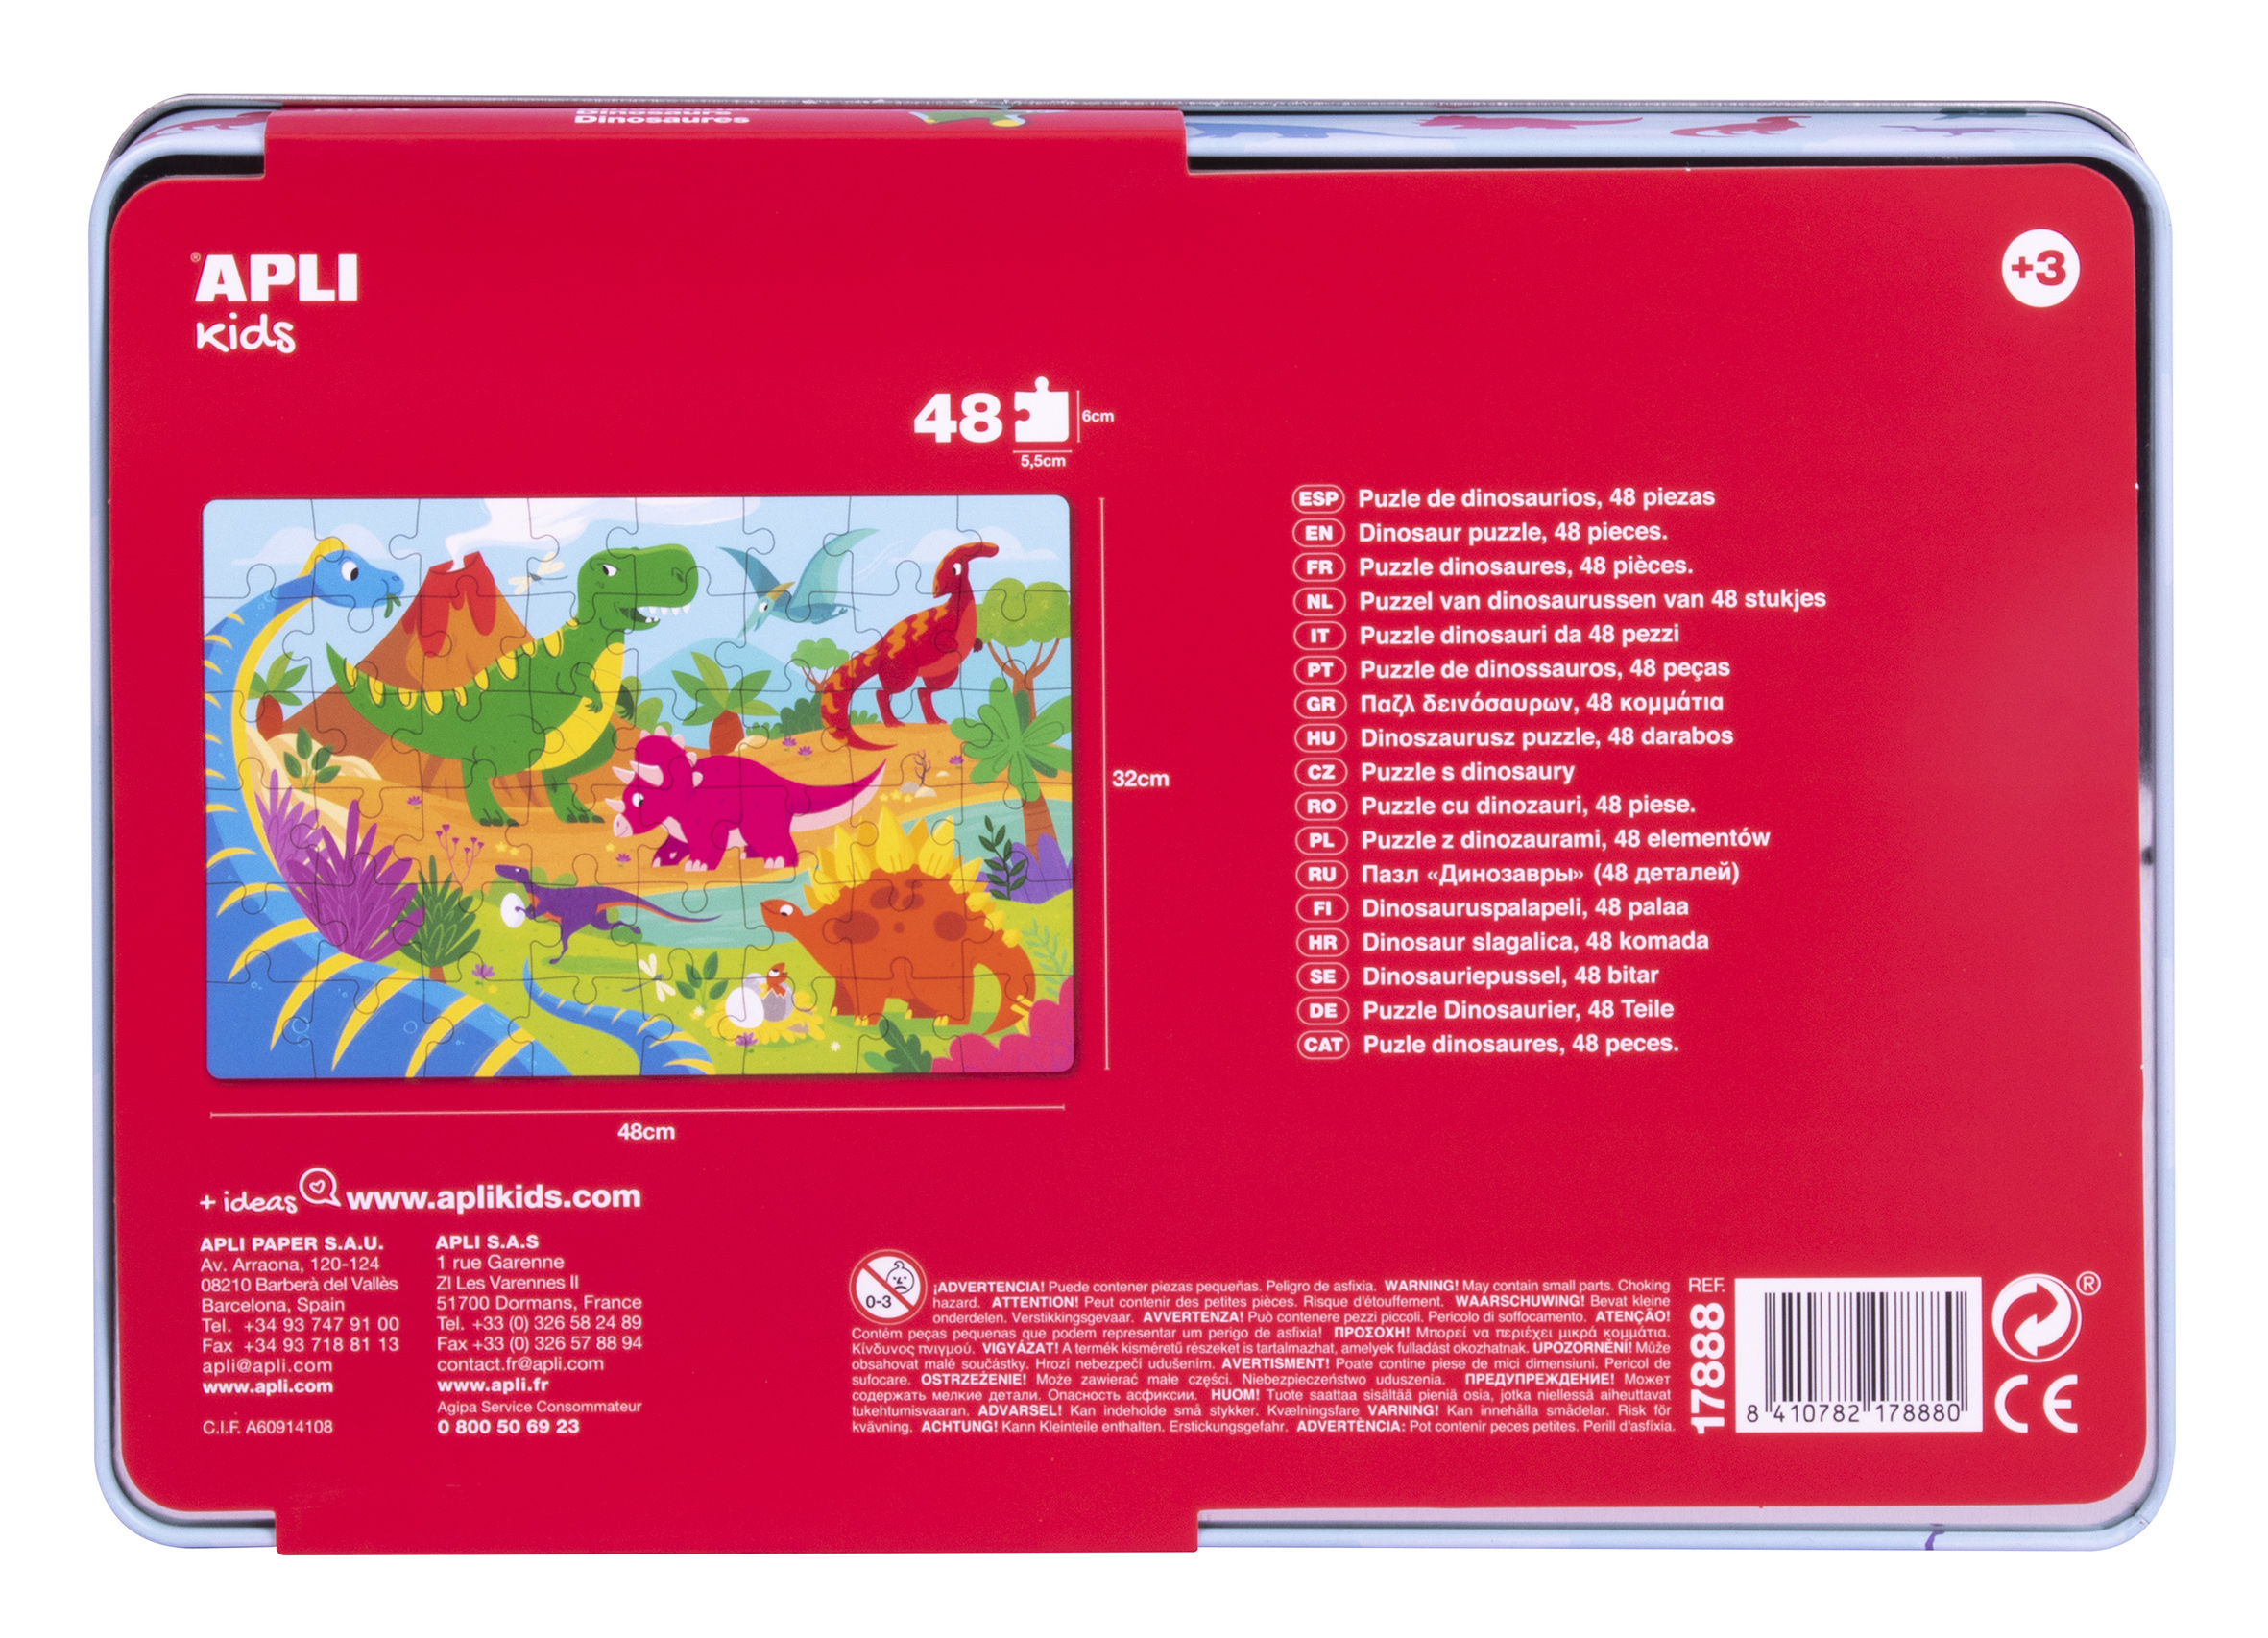 Puzzle Dinosaure Apli Kids - 48 Pièces de 5,5x6cm - Boîte Rectangulaire en Métal - Design Exclusif pour Enfants, Coloré, Clair et Simple - Pièces Résistantes et Sûres - Épaisseur 2mm avec Finition Brillante et Indiana au Dos